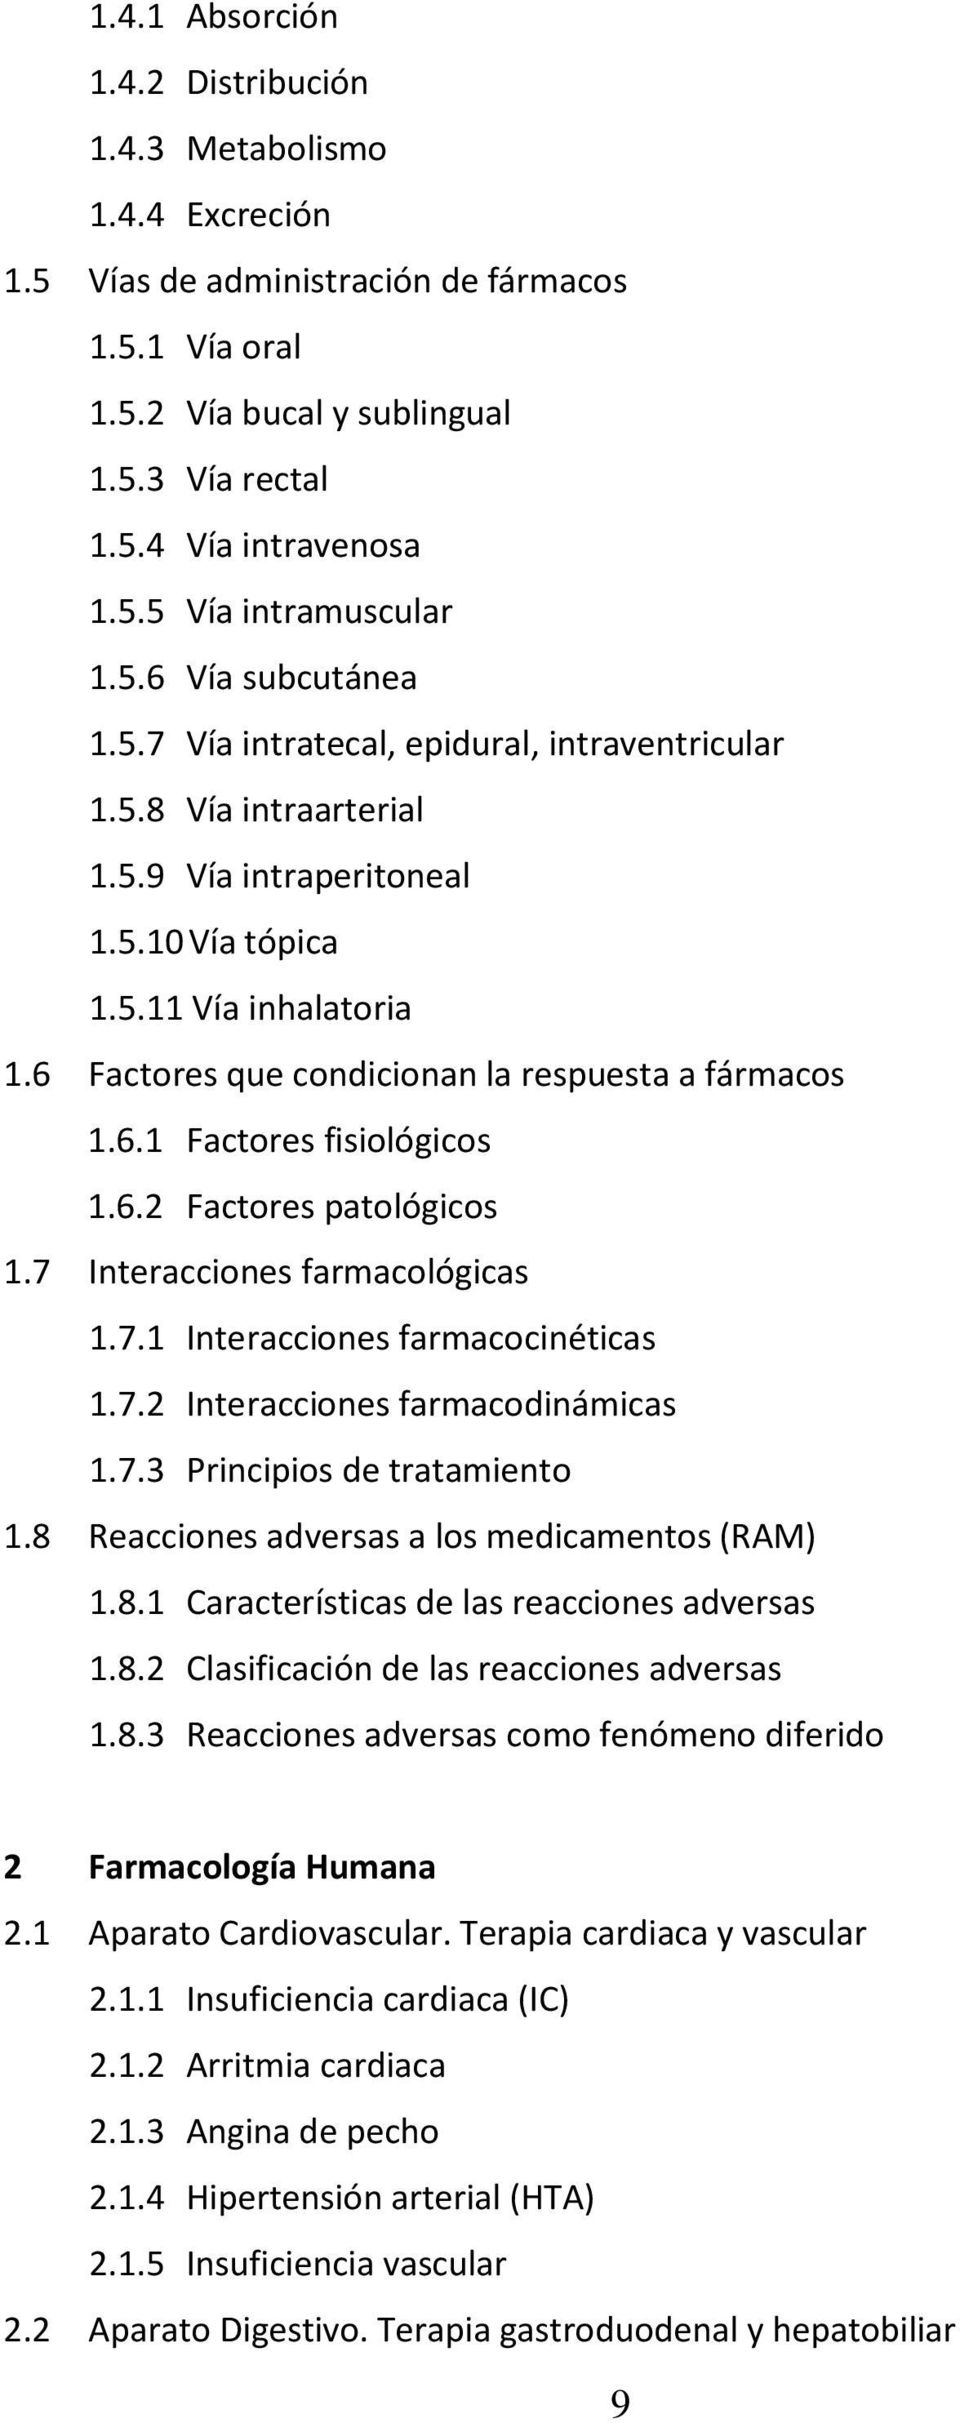 6 Factores que condicionan la respuesta a fármacos 1.6.1 Factores fisiológicos 1.6.2 Factores patológicos 1.7 Interacciones farmacológicas 1.7.1 Interacciones farmacocinéticas 1.7.2 Interacciones farmacodinámicas 1.